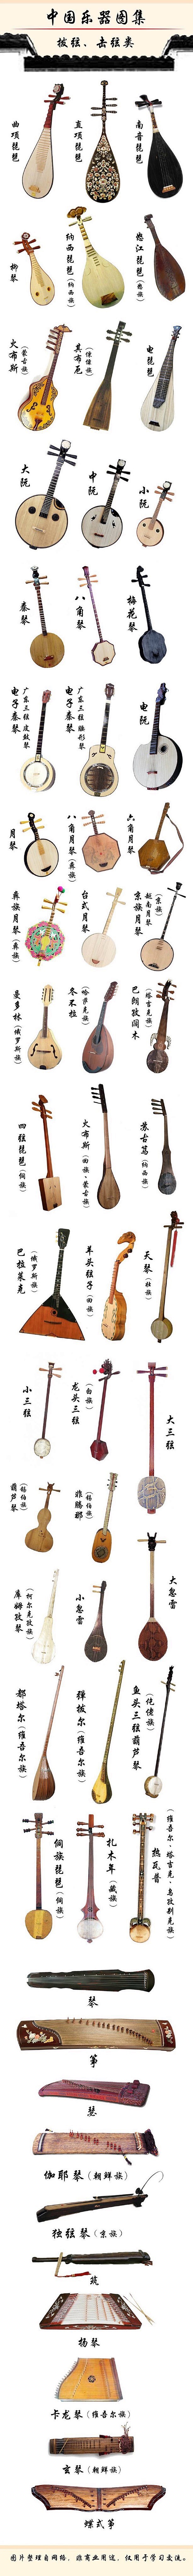 中國樂器。《古箏》L【纪录片】中国乐器 ...